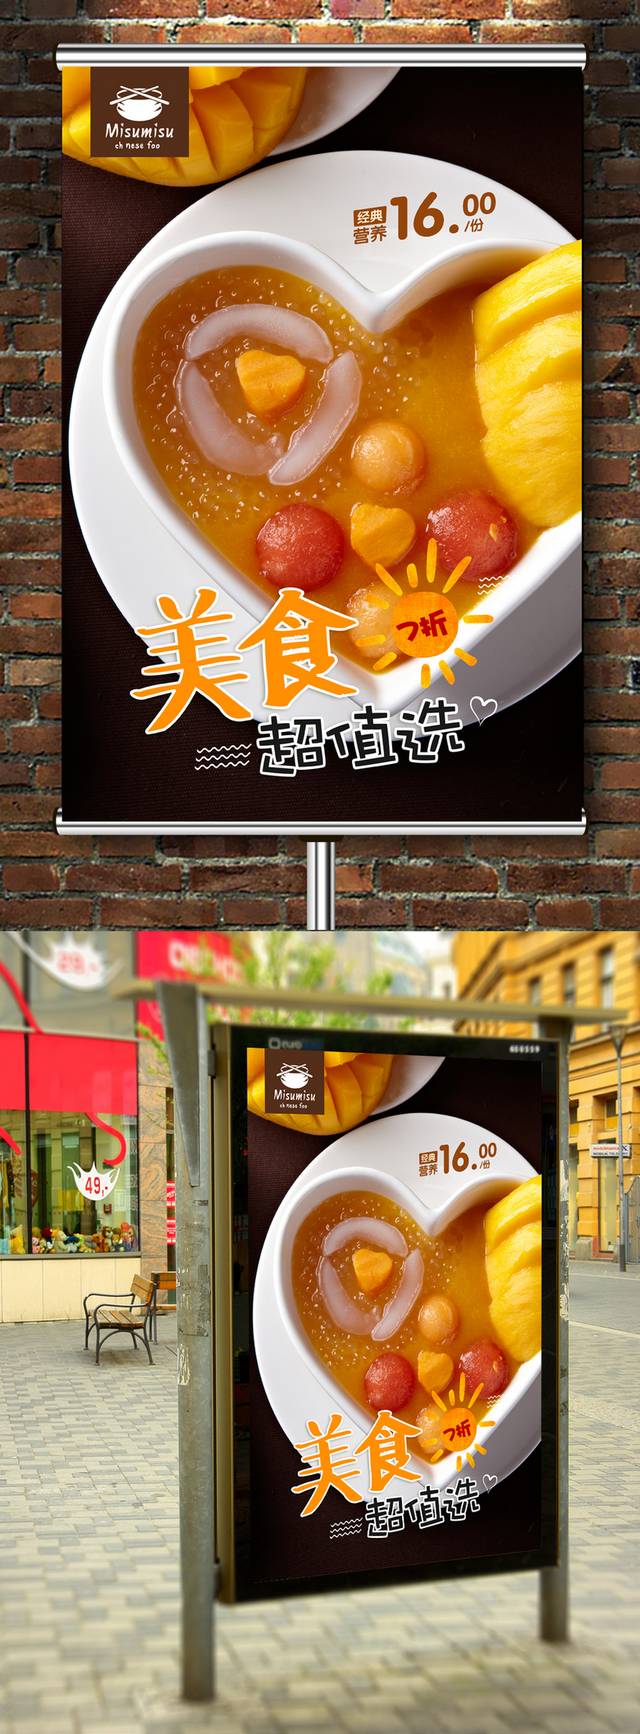 高清奶茶店芒果西米露海报设计下载